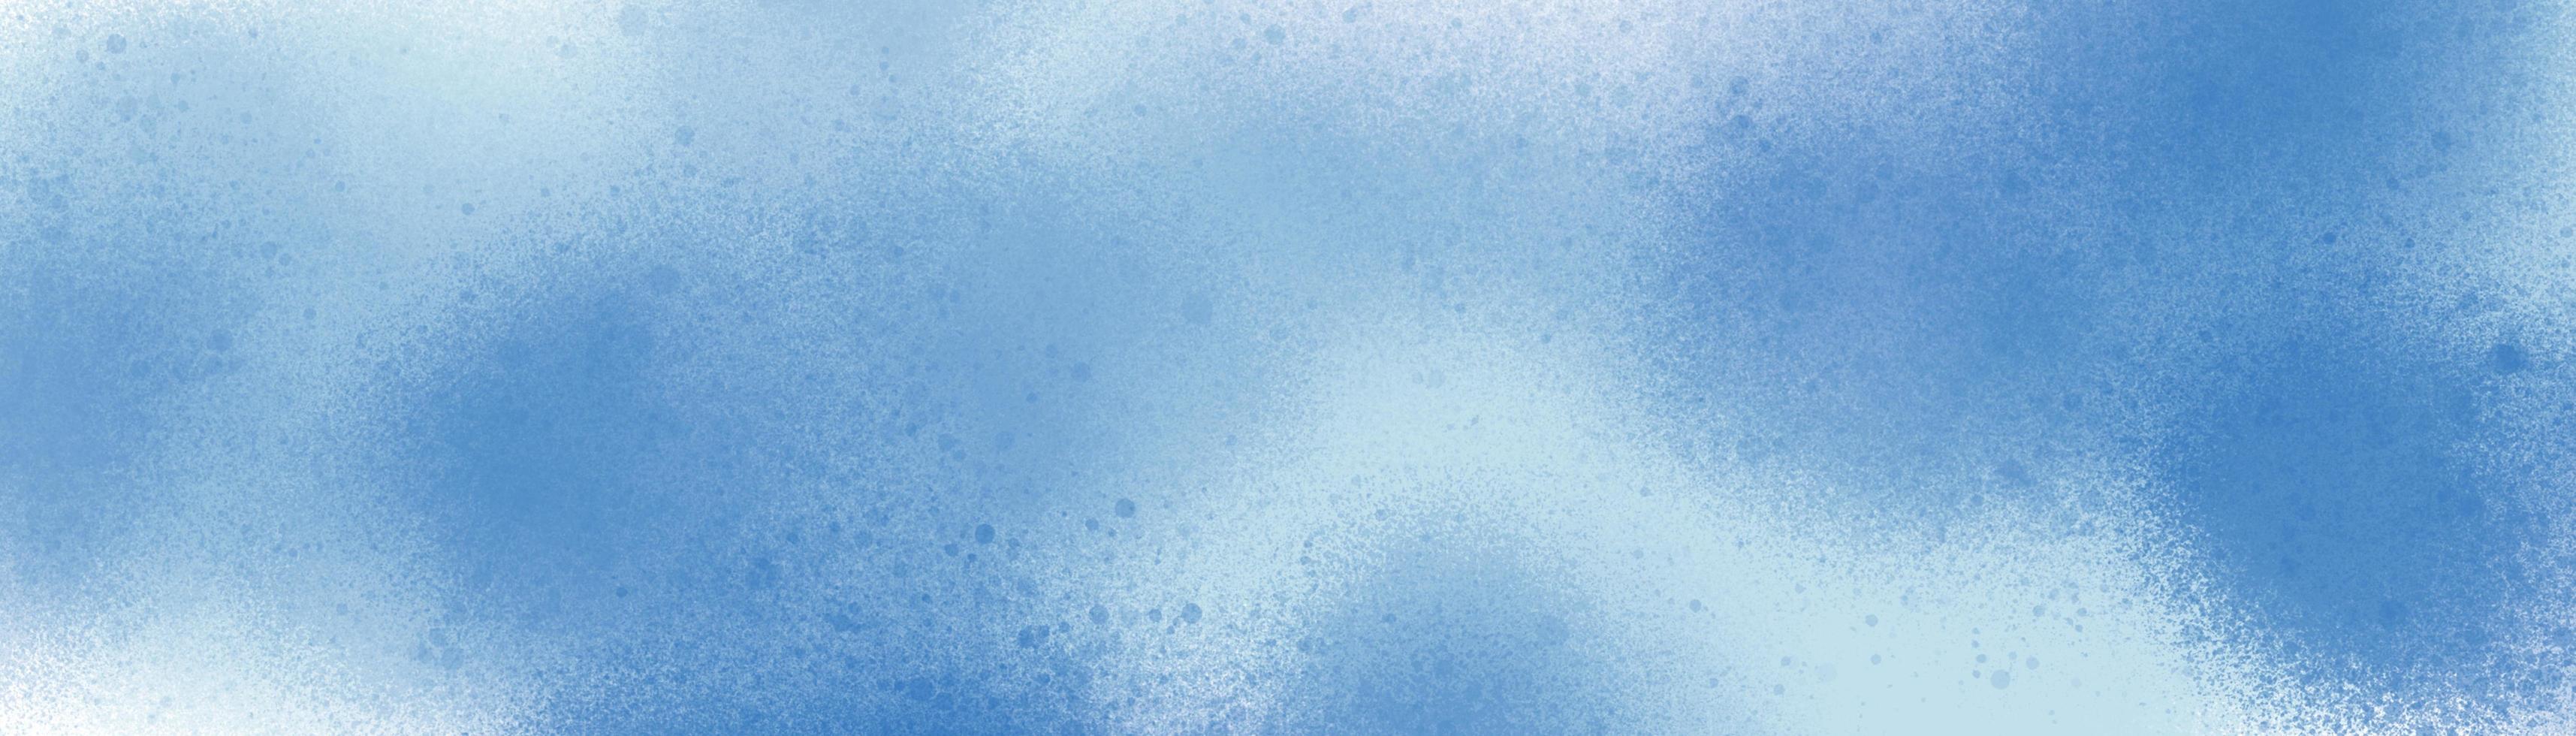 abstraktes Spritzer-Pinsel-Hintergrundmuster in Winterfarben gemalt. Blau und Weiß in Punkten Texturelemente für kreatives Design. foto